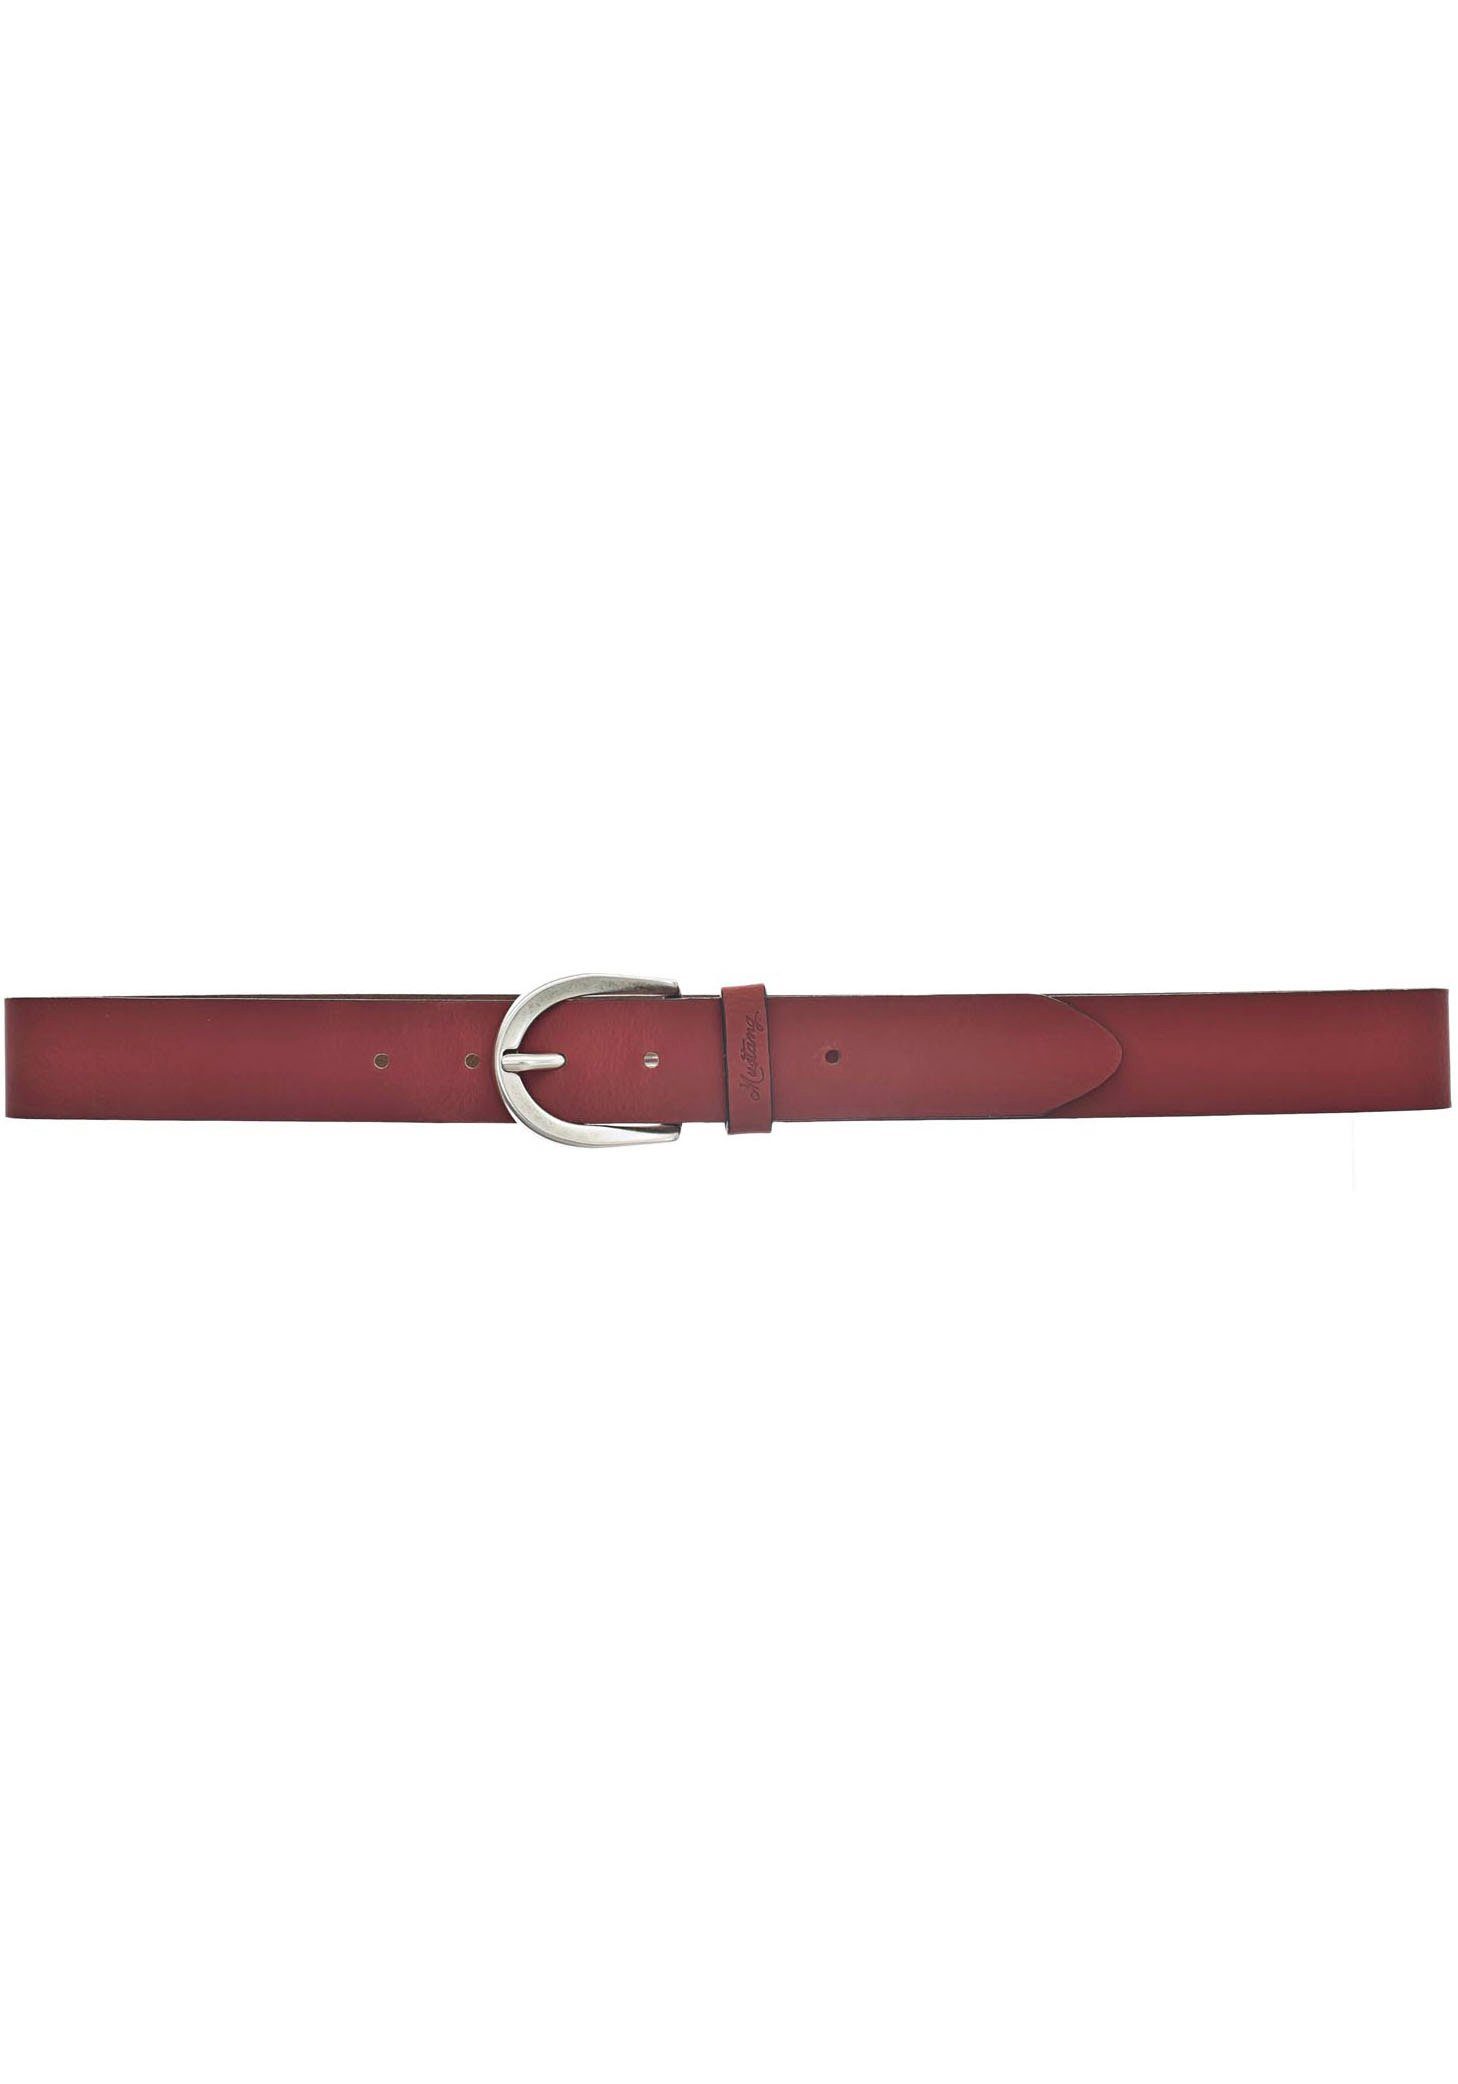 Schlaufe geprägtem Ledergürtel auf MUSTANG mit rot der MUSTANG-Logo